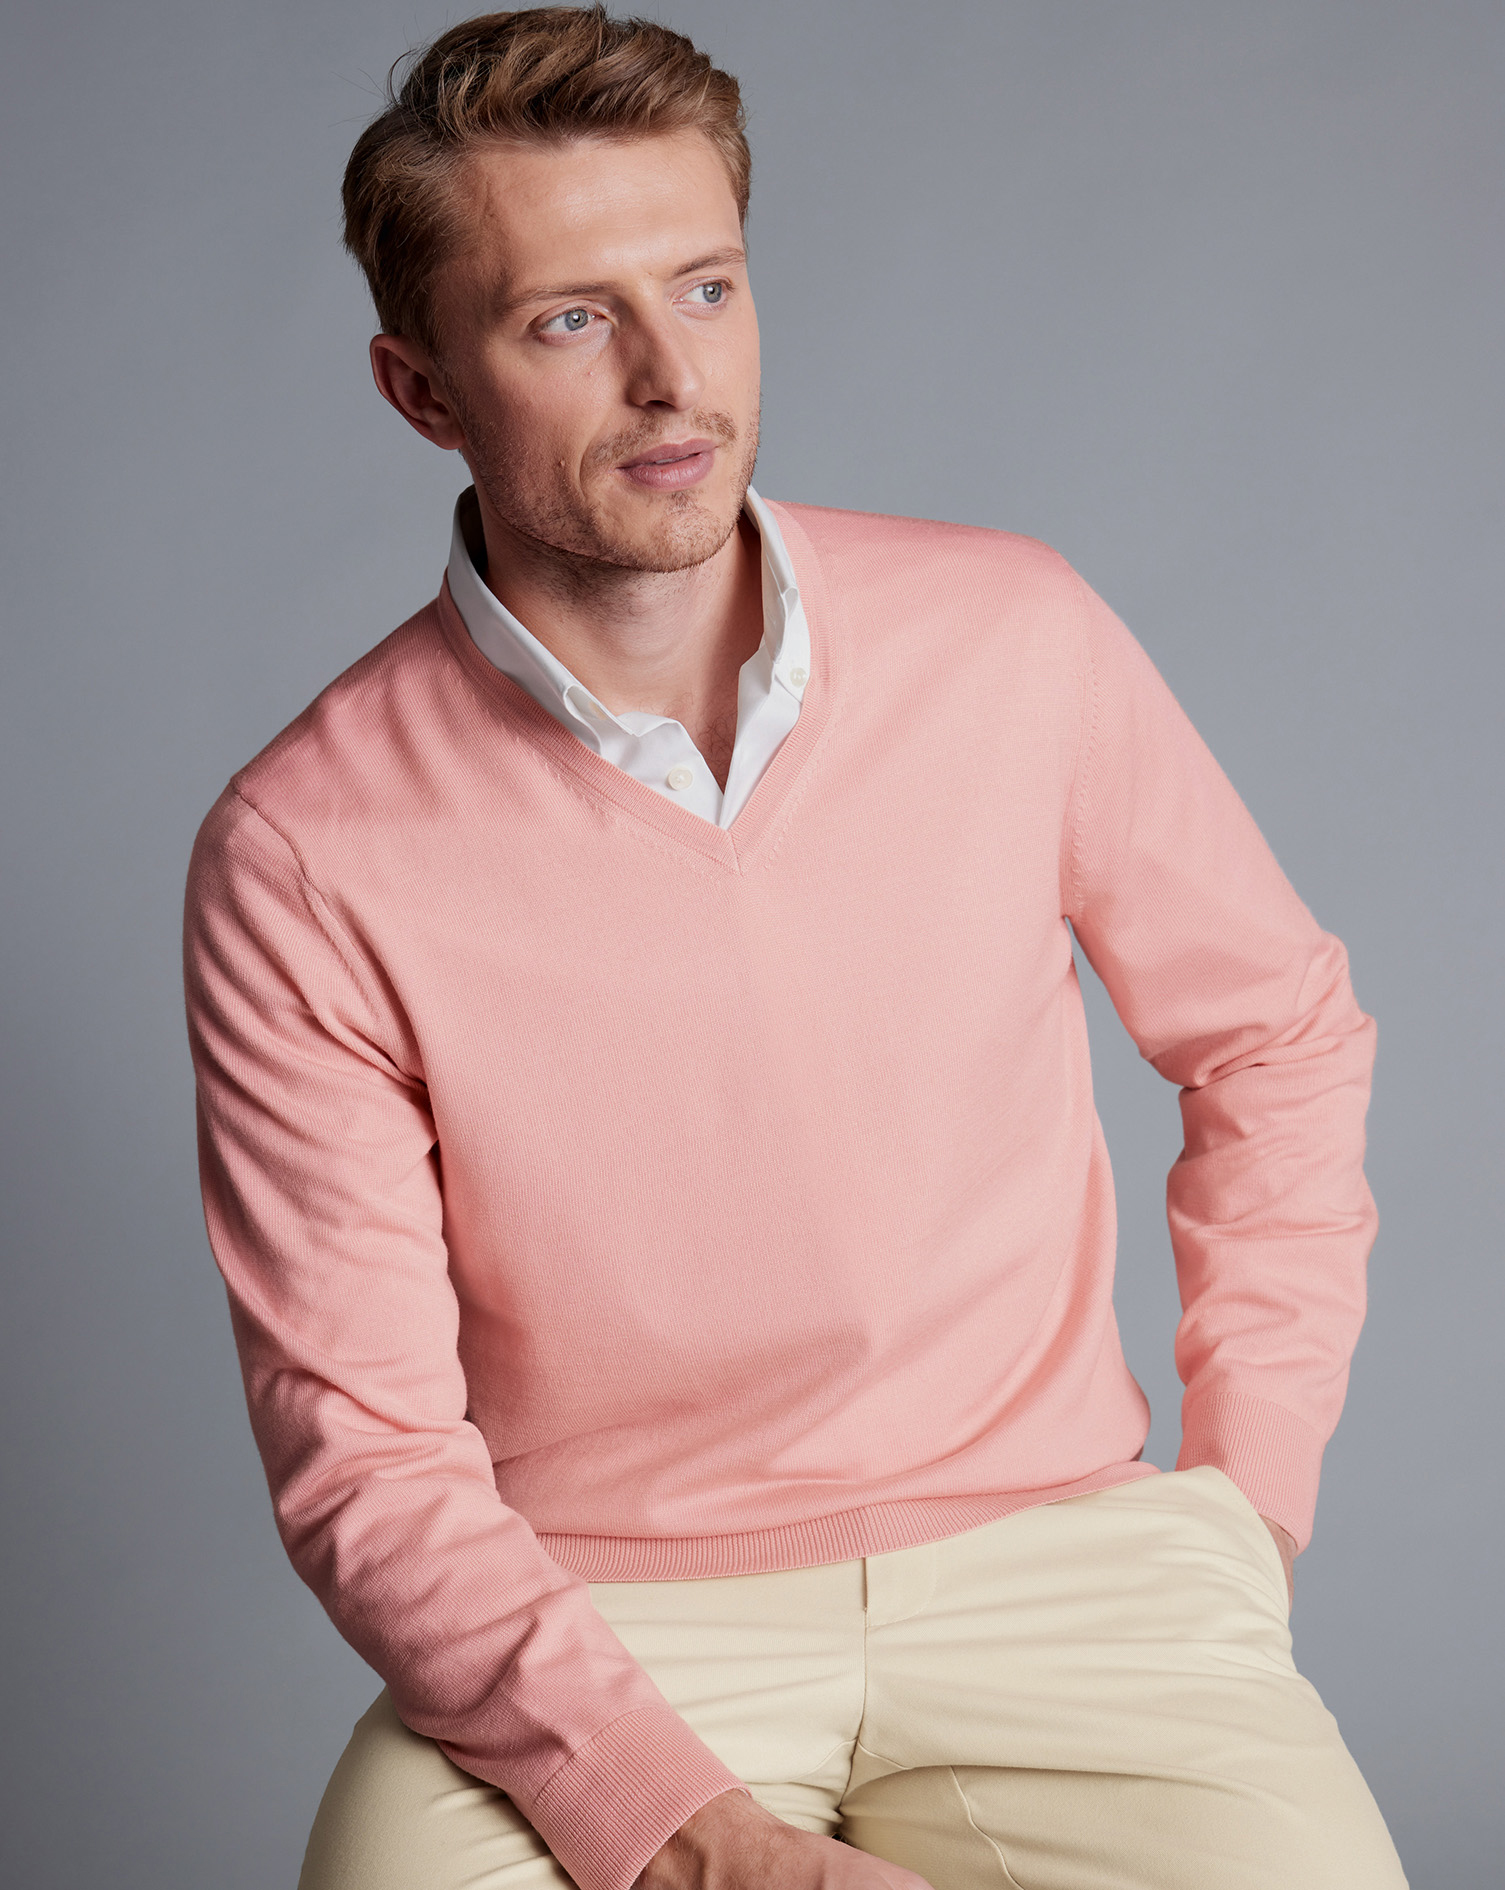 Men's Charles Tyrwhitt Merino V-Neck Sweater - Light Coral Pink Size Small Wool
